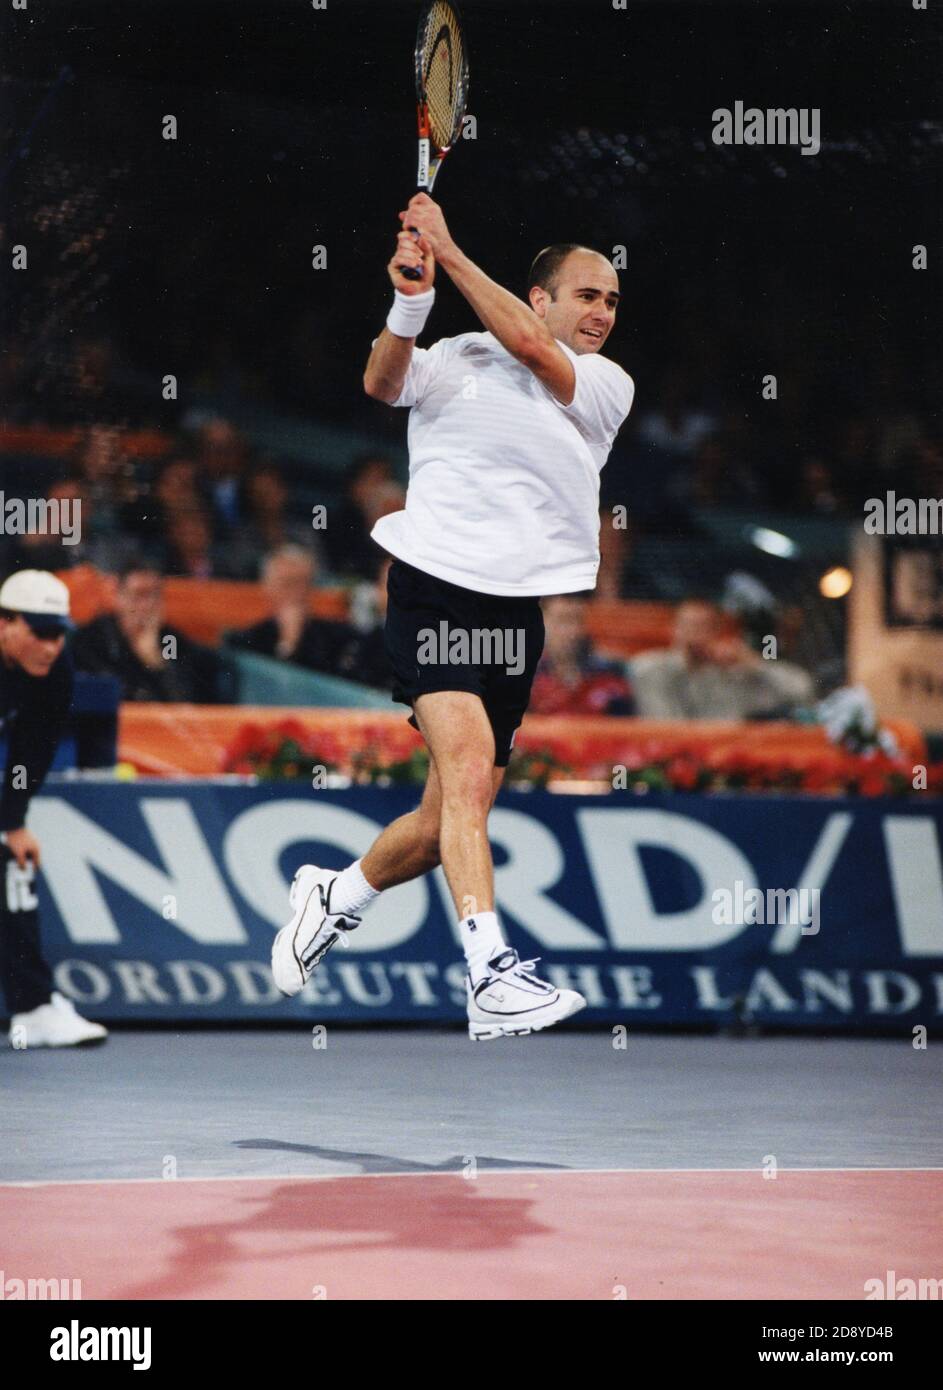 Joueur américain de tennis Andre Agassi, années 2000 Banque D'Images